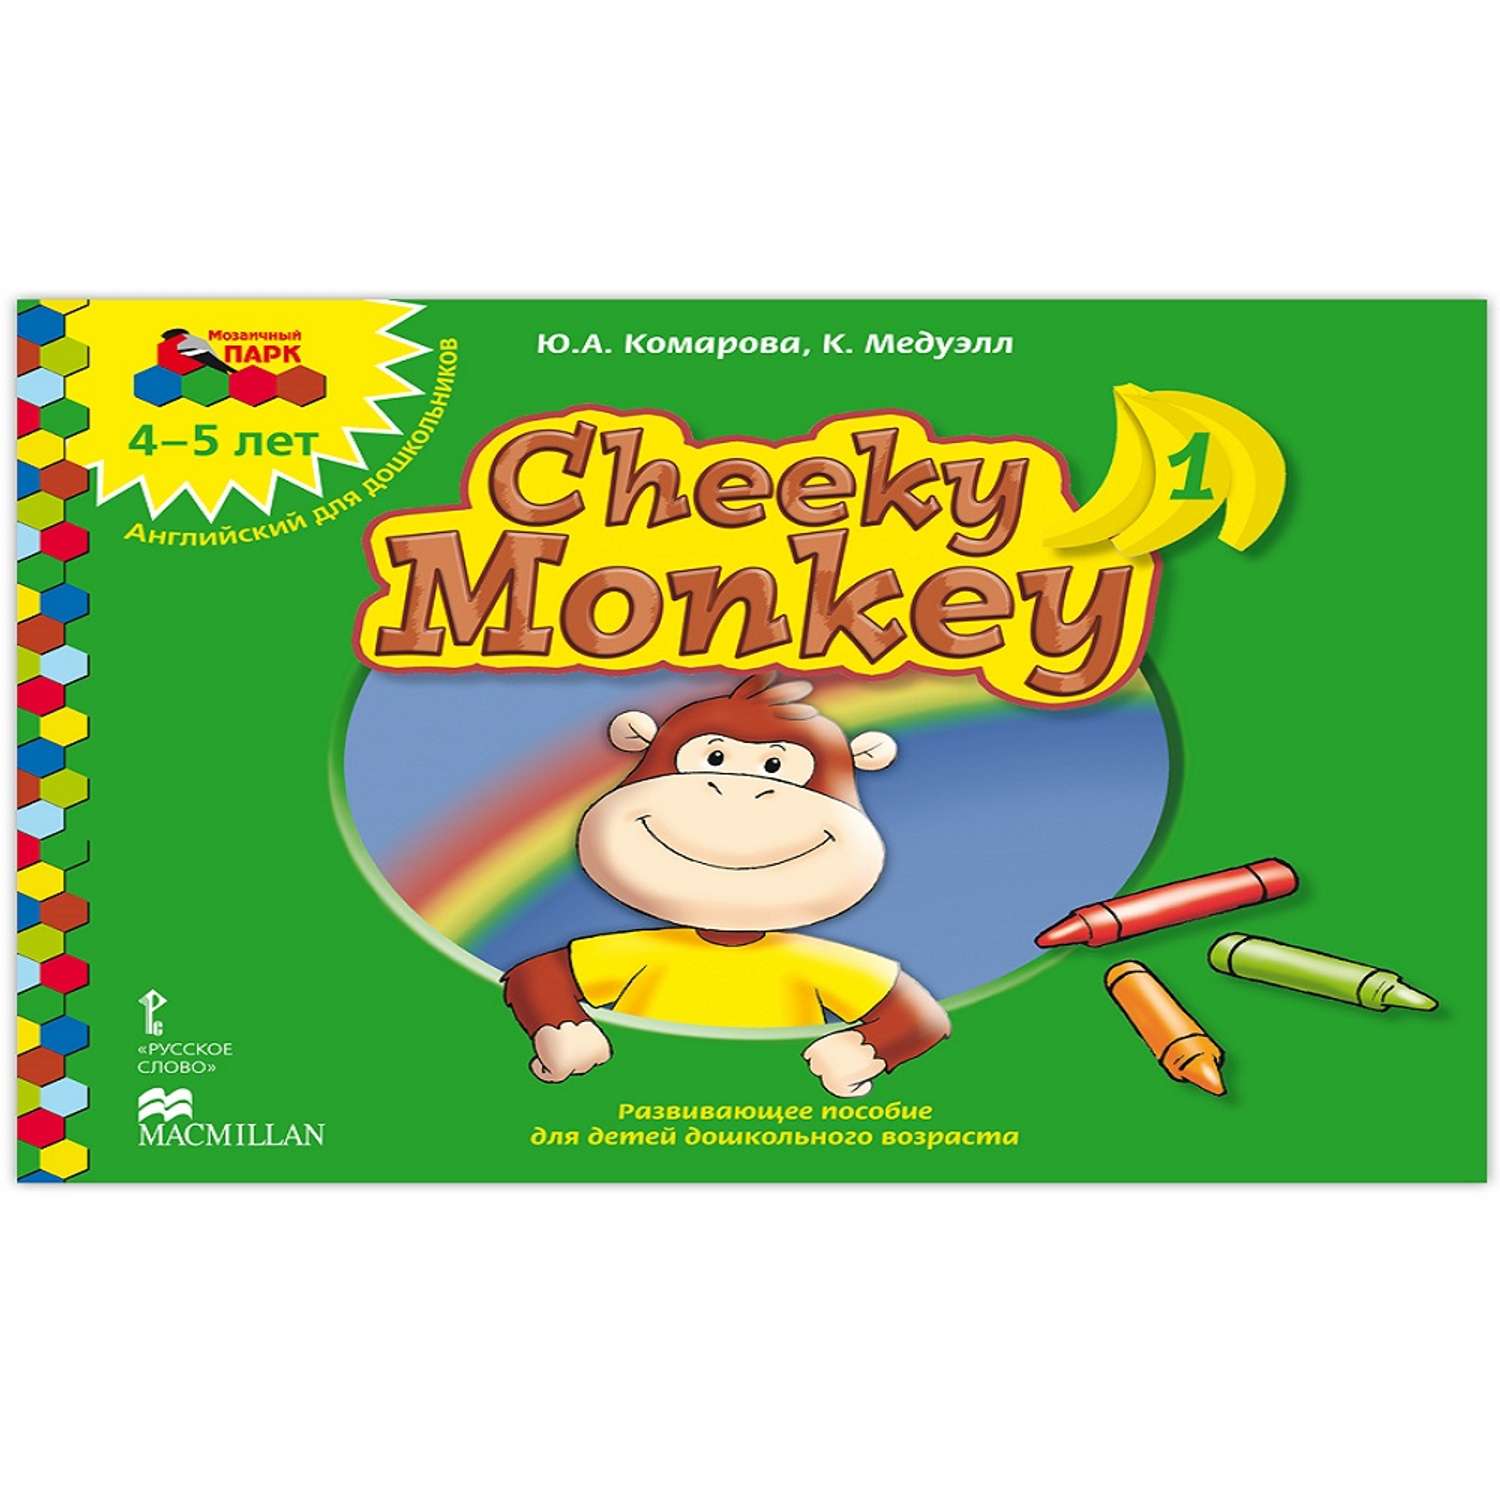 Книга Русское Слово Cheeky Monkey 1Развивающее пособие для детей 4-5 лет - фото 1